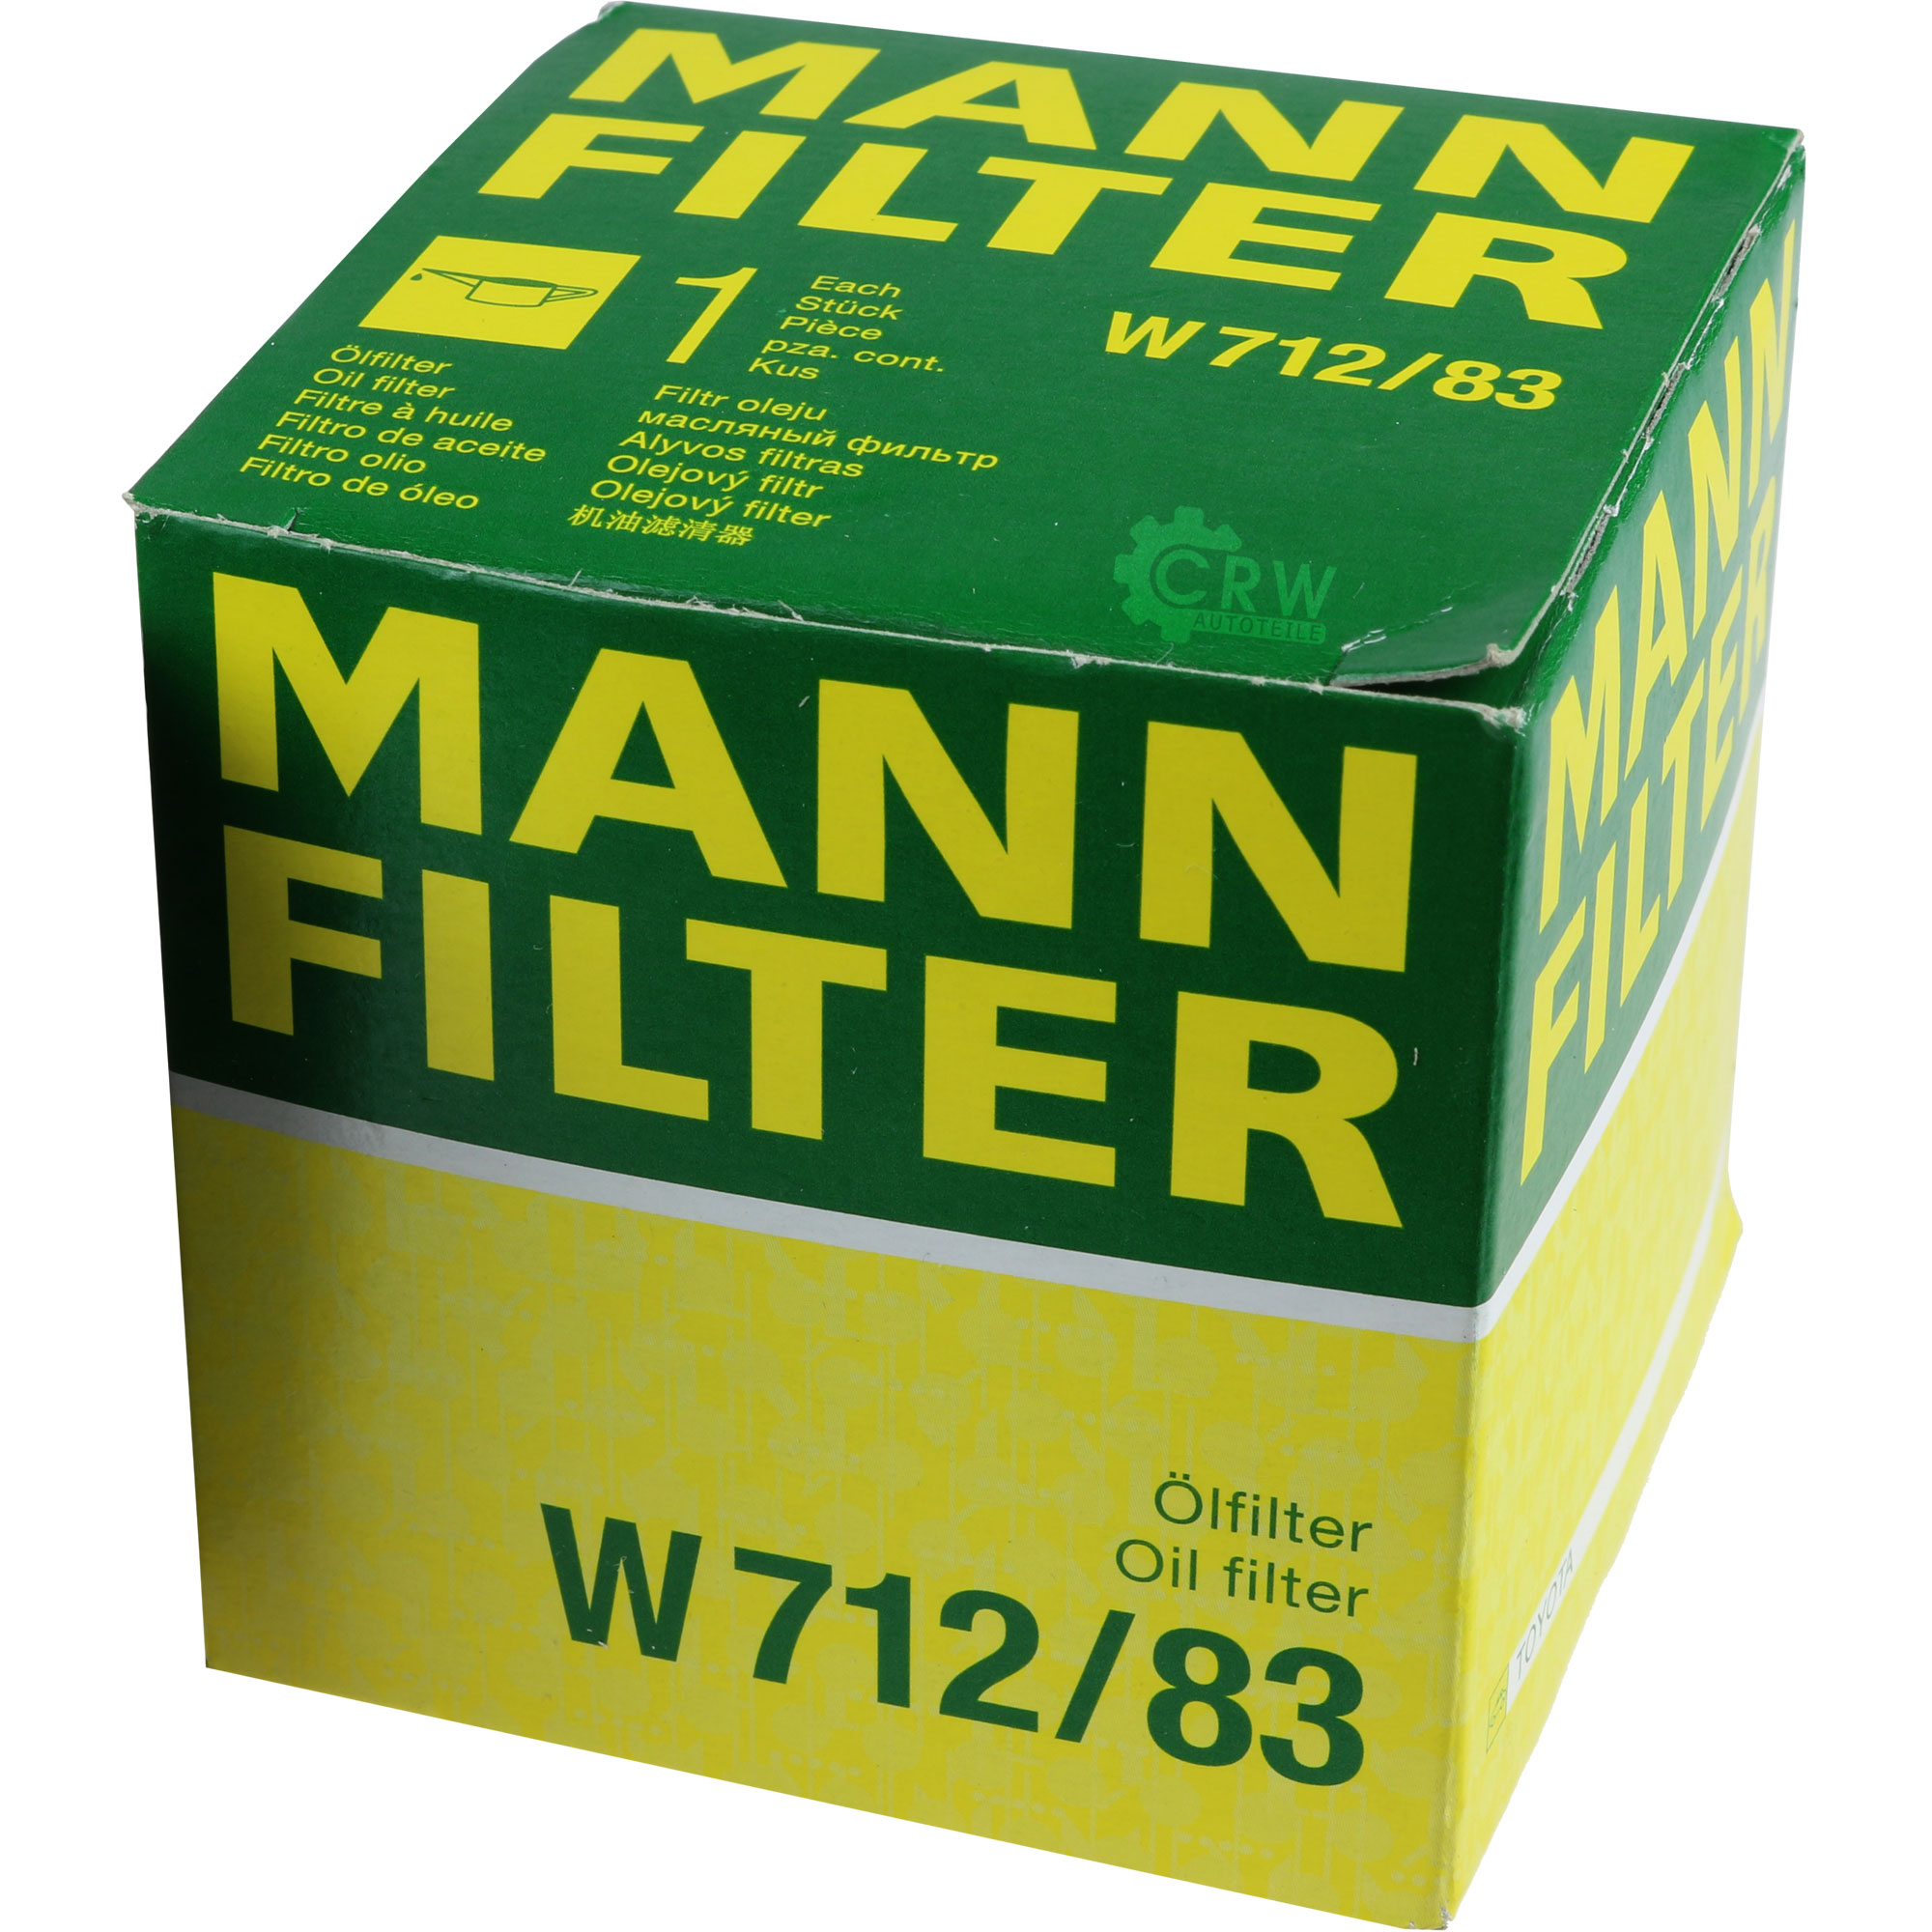 MANN-FILTER Ölfilter W 712/83 Oil Filter